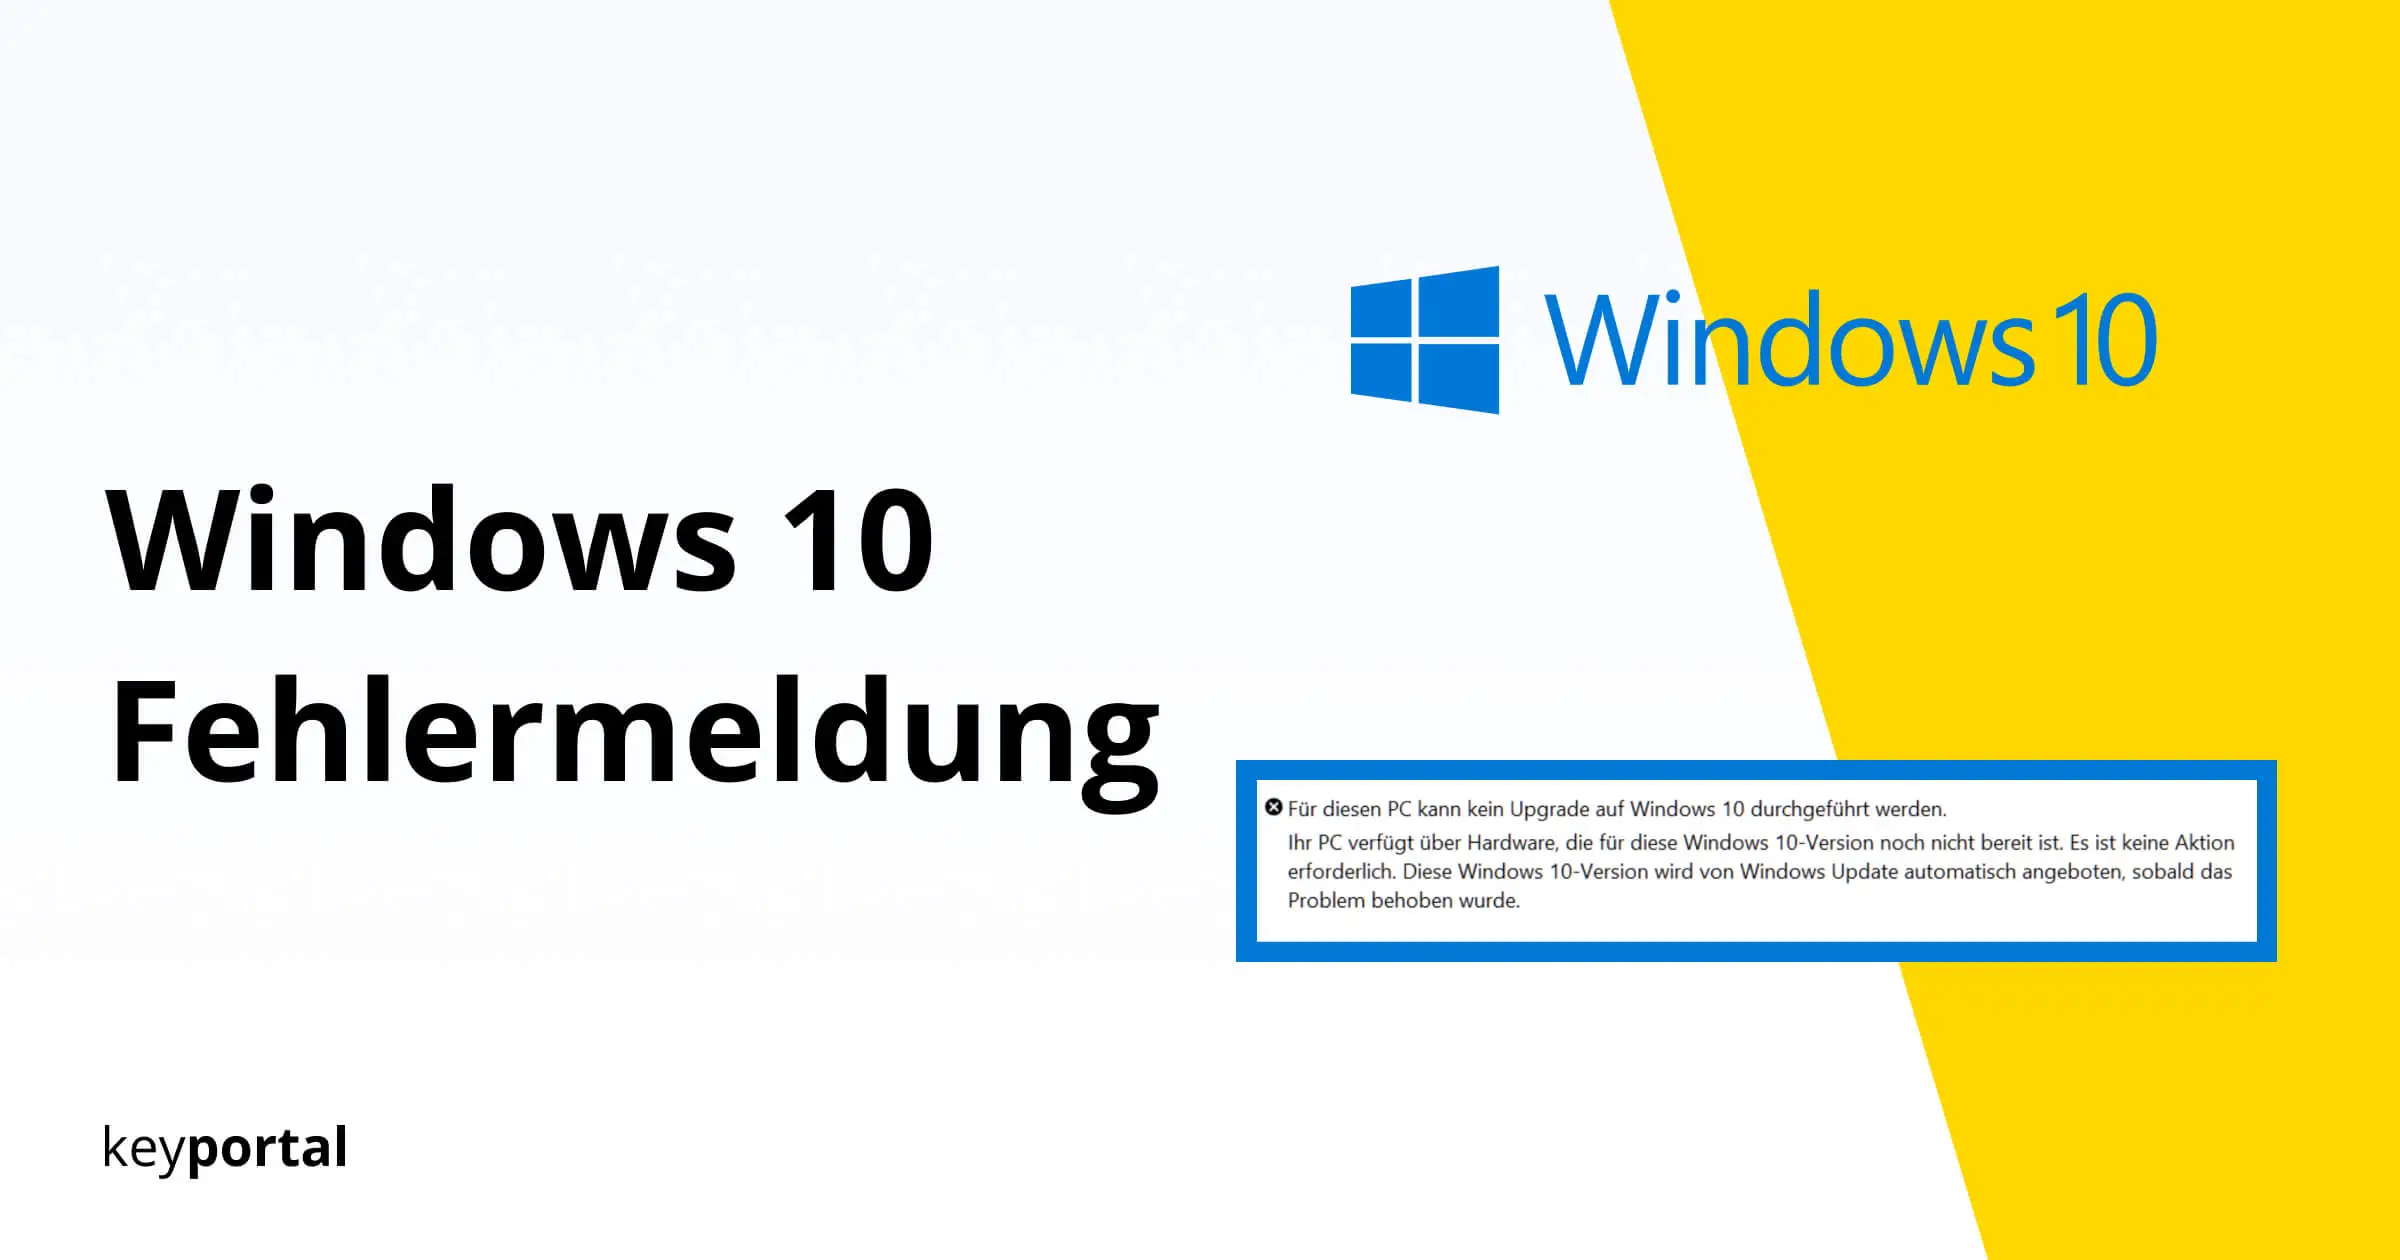 Warum werden die Einstellungen in Windows 10/11 nicht angezeigt? - Wenn die Einstellungen in Windows 10/11 nicht angezeigt werden, kann dies verschiedene Ursachen haben. Eine mögliche Ursache ist ein problematisches Update oder eine beschädigte Systemdatei. Es kann auch sein, dass bestimmte Einstellungen deaktiviert oder blockiert wurden.
Wie behebe ich das Problem mit den Windows Einstellungen? - Es gibt mehrere Lösungen, um das Problem mit den Windows Einstellungen zu beheben. Eine Lösung best